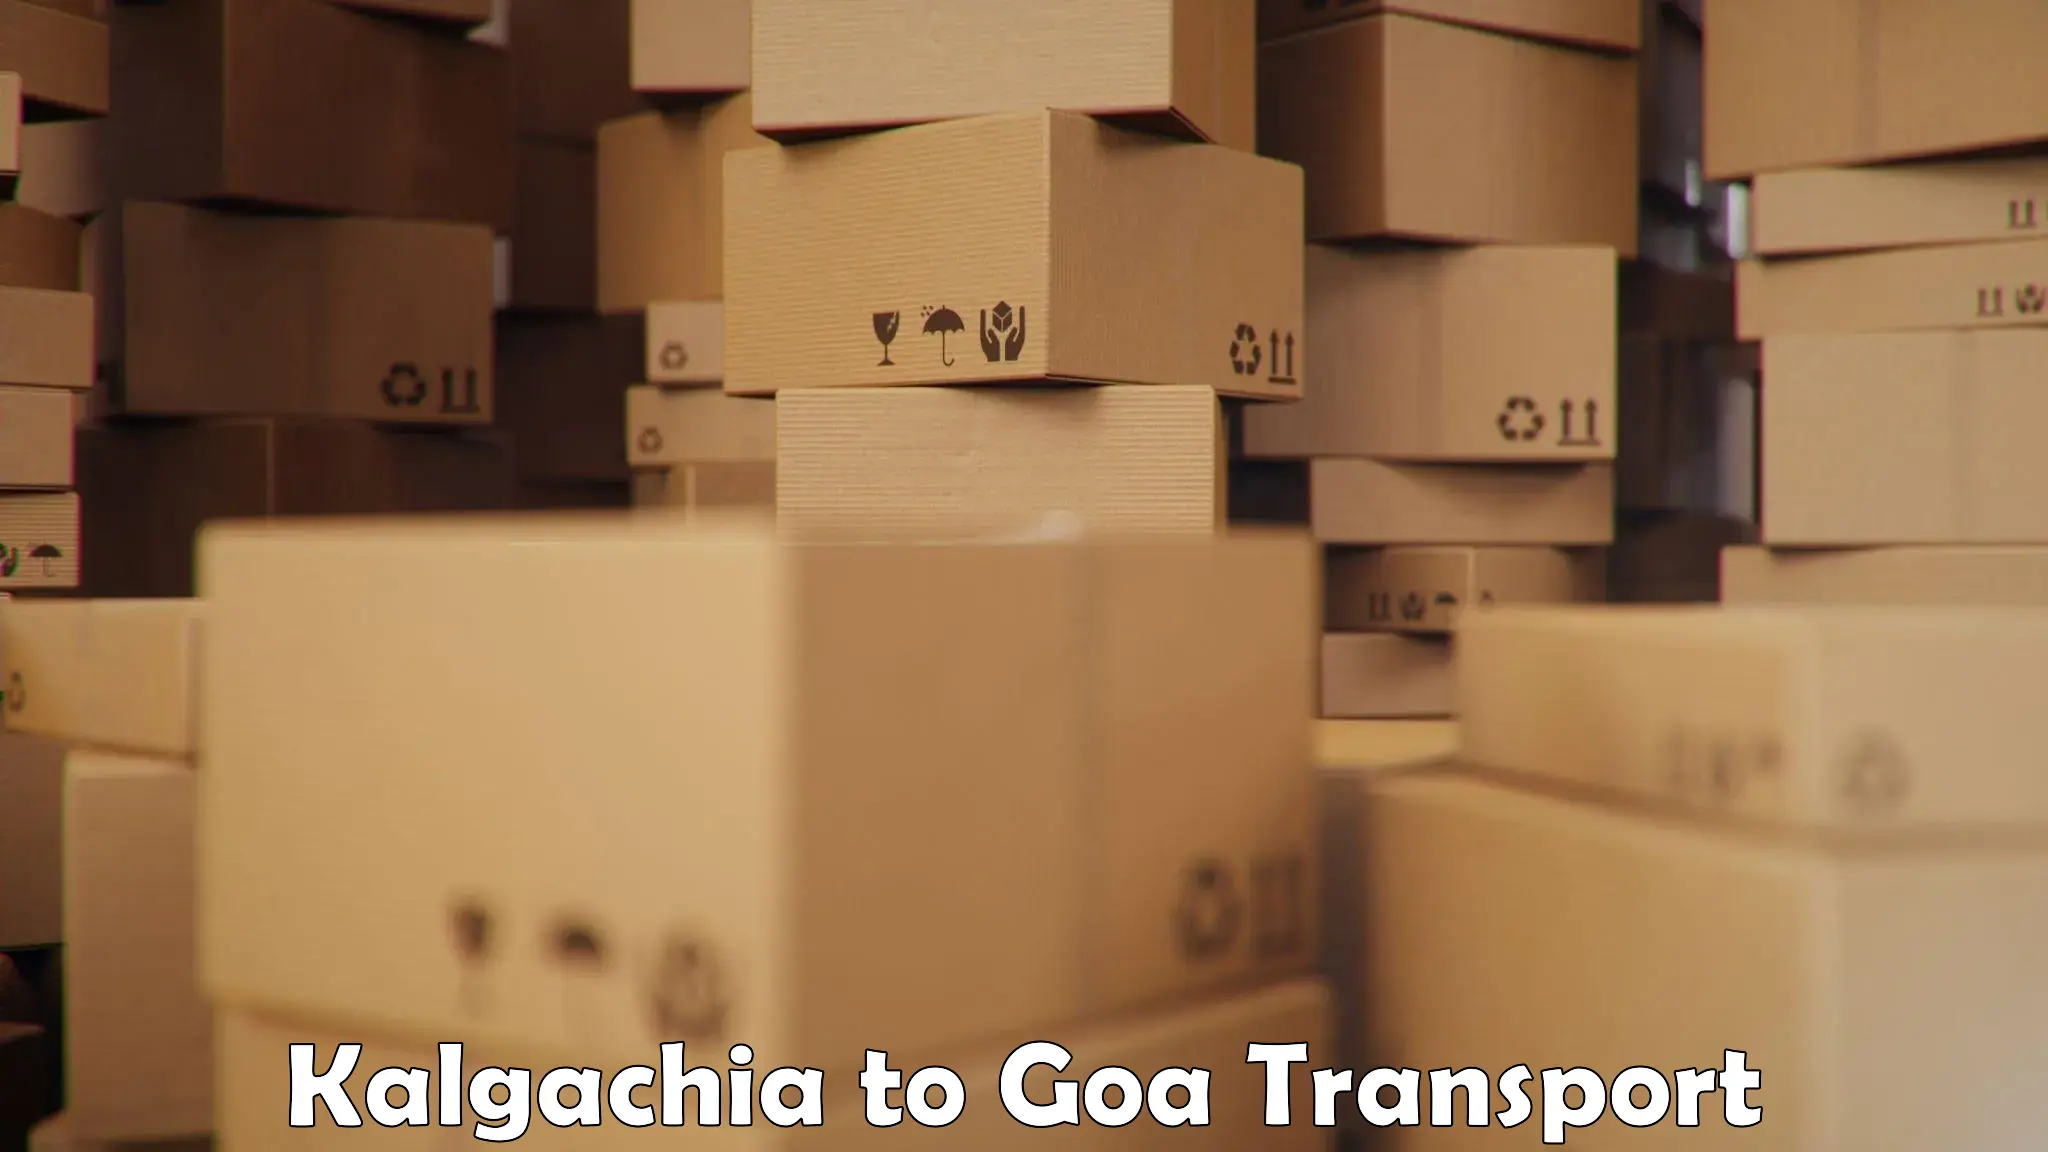 Daily parcel service transport in Kalgachia to Goa University